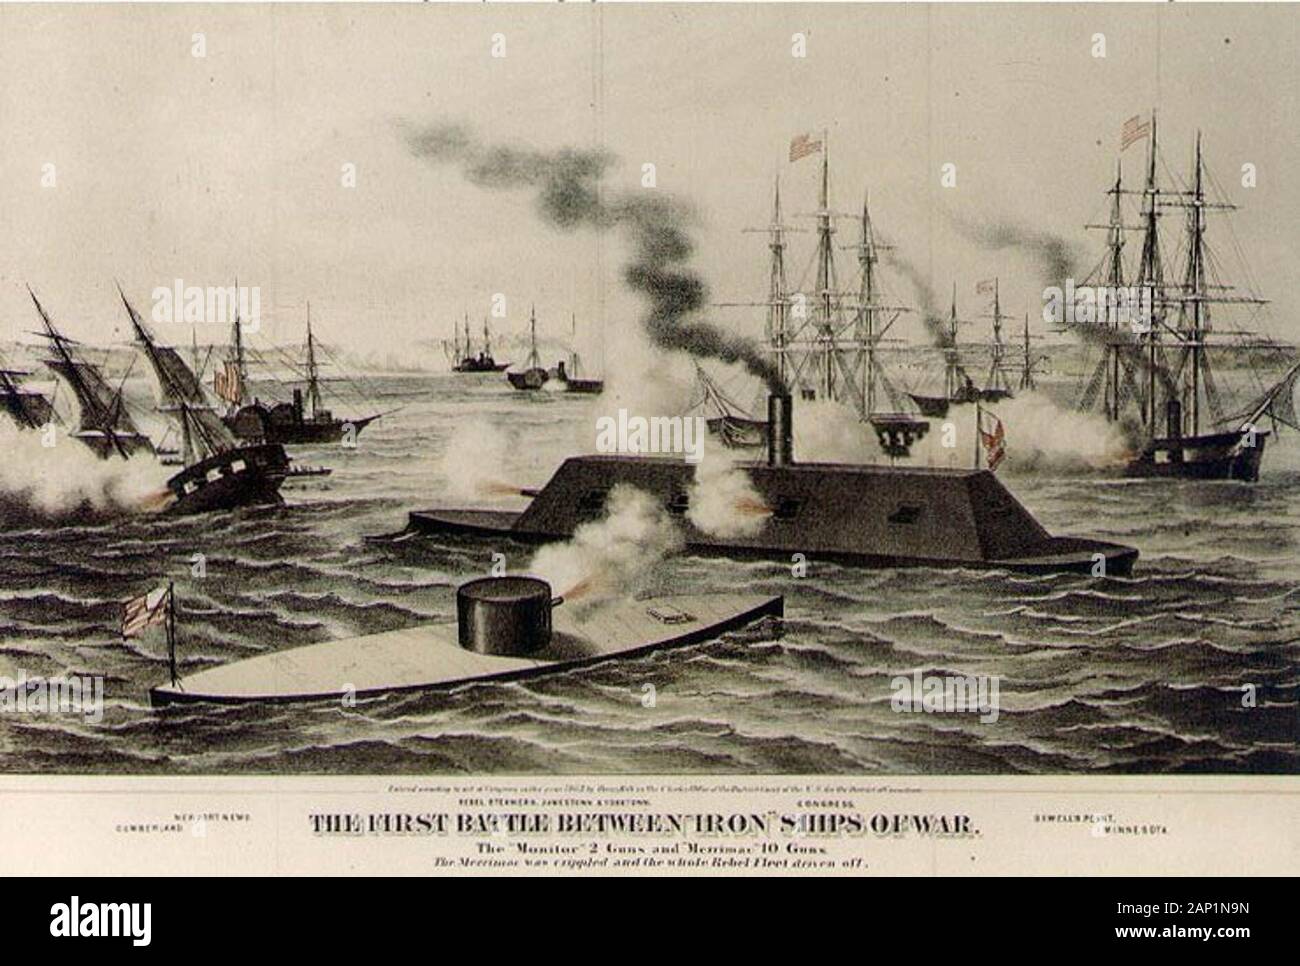 Primera Batalla de hierro de los buques de guerra por Henry Bill. Mostrados son USS Monitor, CSS Virginia, USS Cumberland, CSS Jamestown, USS Congress, y USS Minnesota Foto de stock